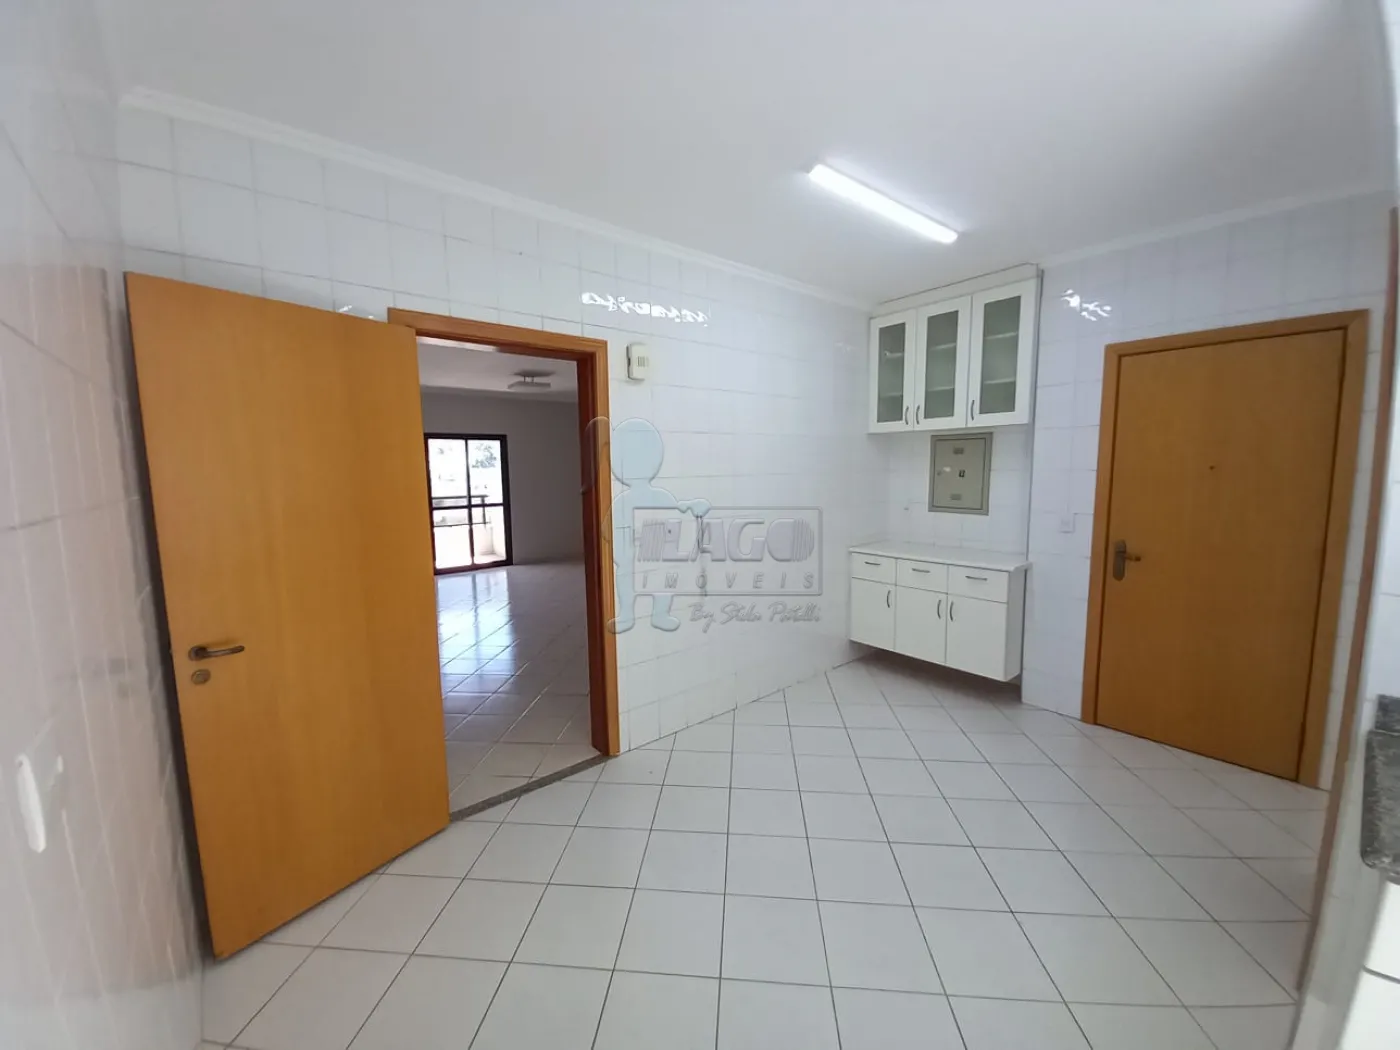 Alugar Apartamentos / Padrão em Ribeirão Preto R$ 3.000,00 - Foto 5